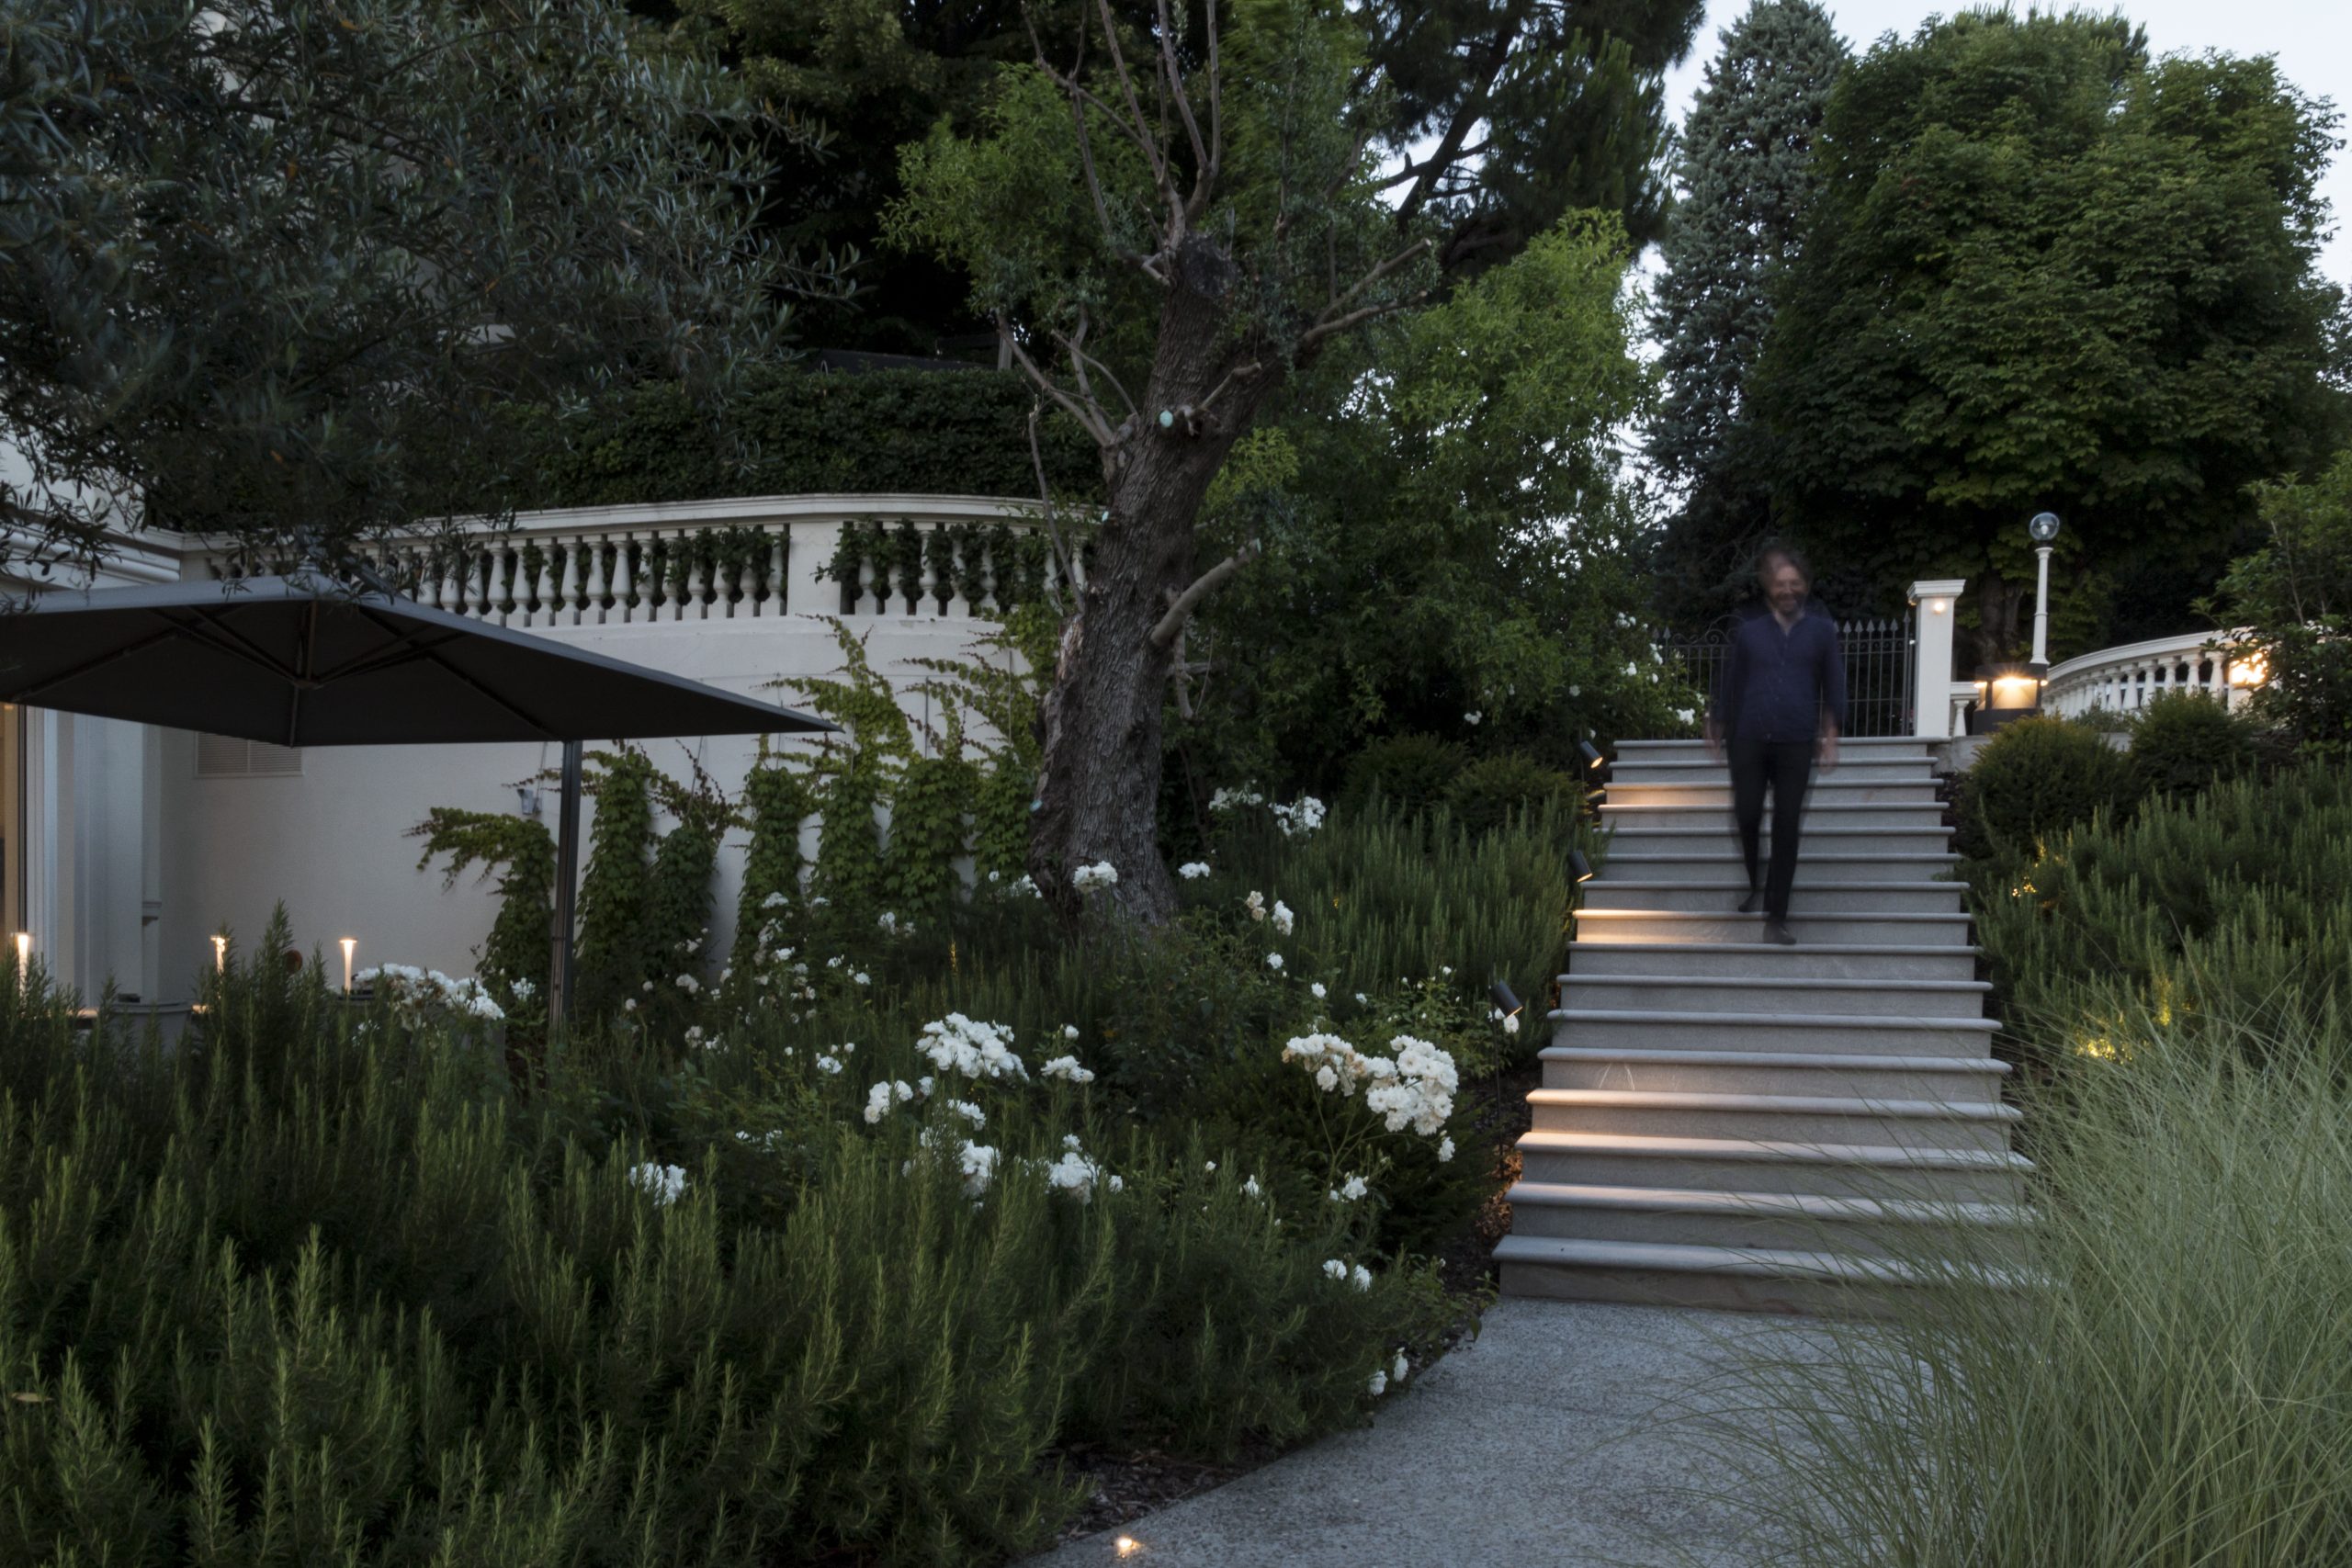 Bellissimo giardino con siepi, con una scalinata illuminata da faretti e un uomo che scende le scale